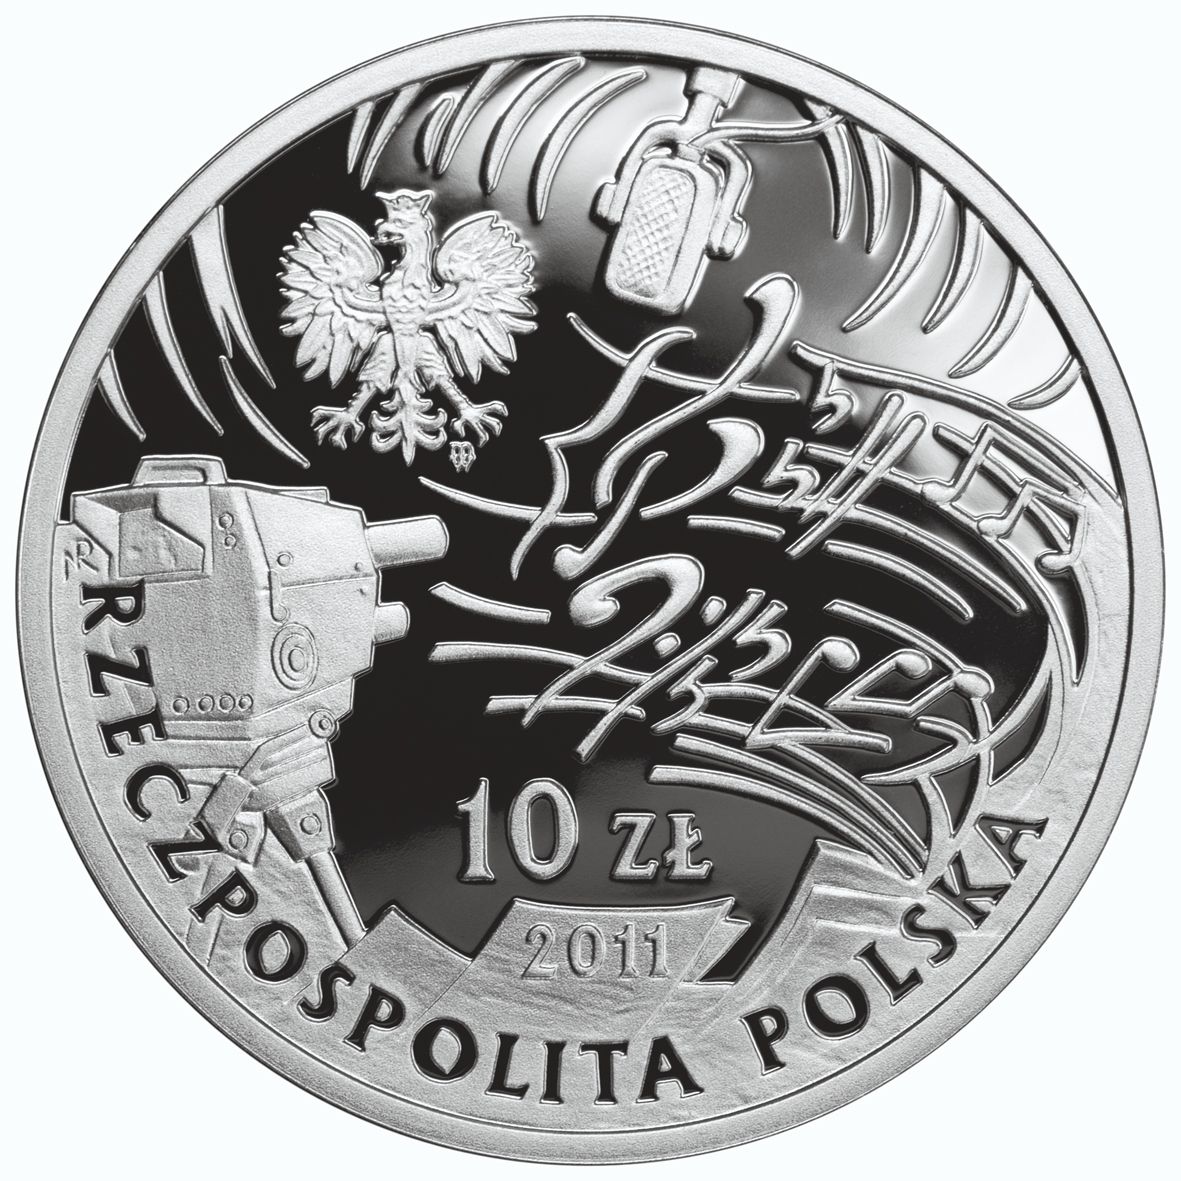 10zl-jeremi-przybora-jerzy-wasowski-awers-monety